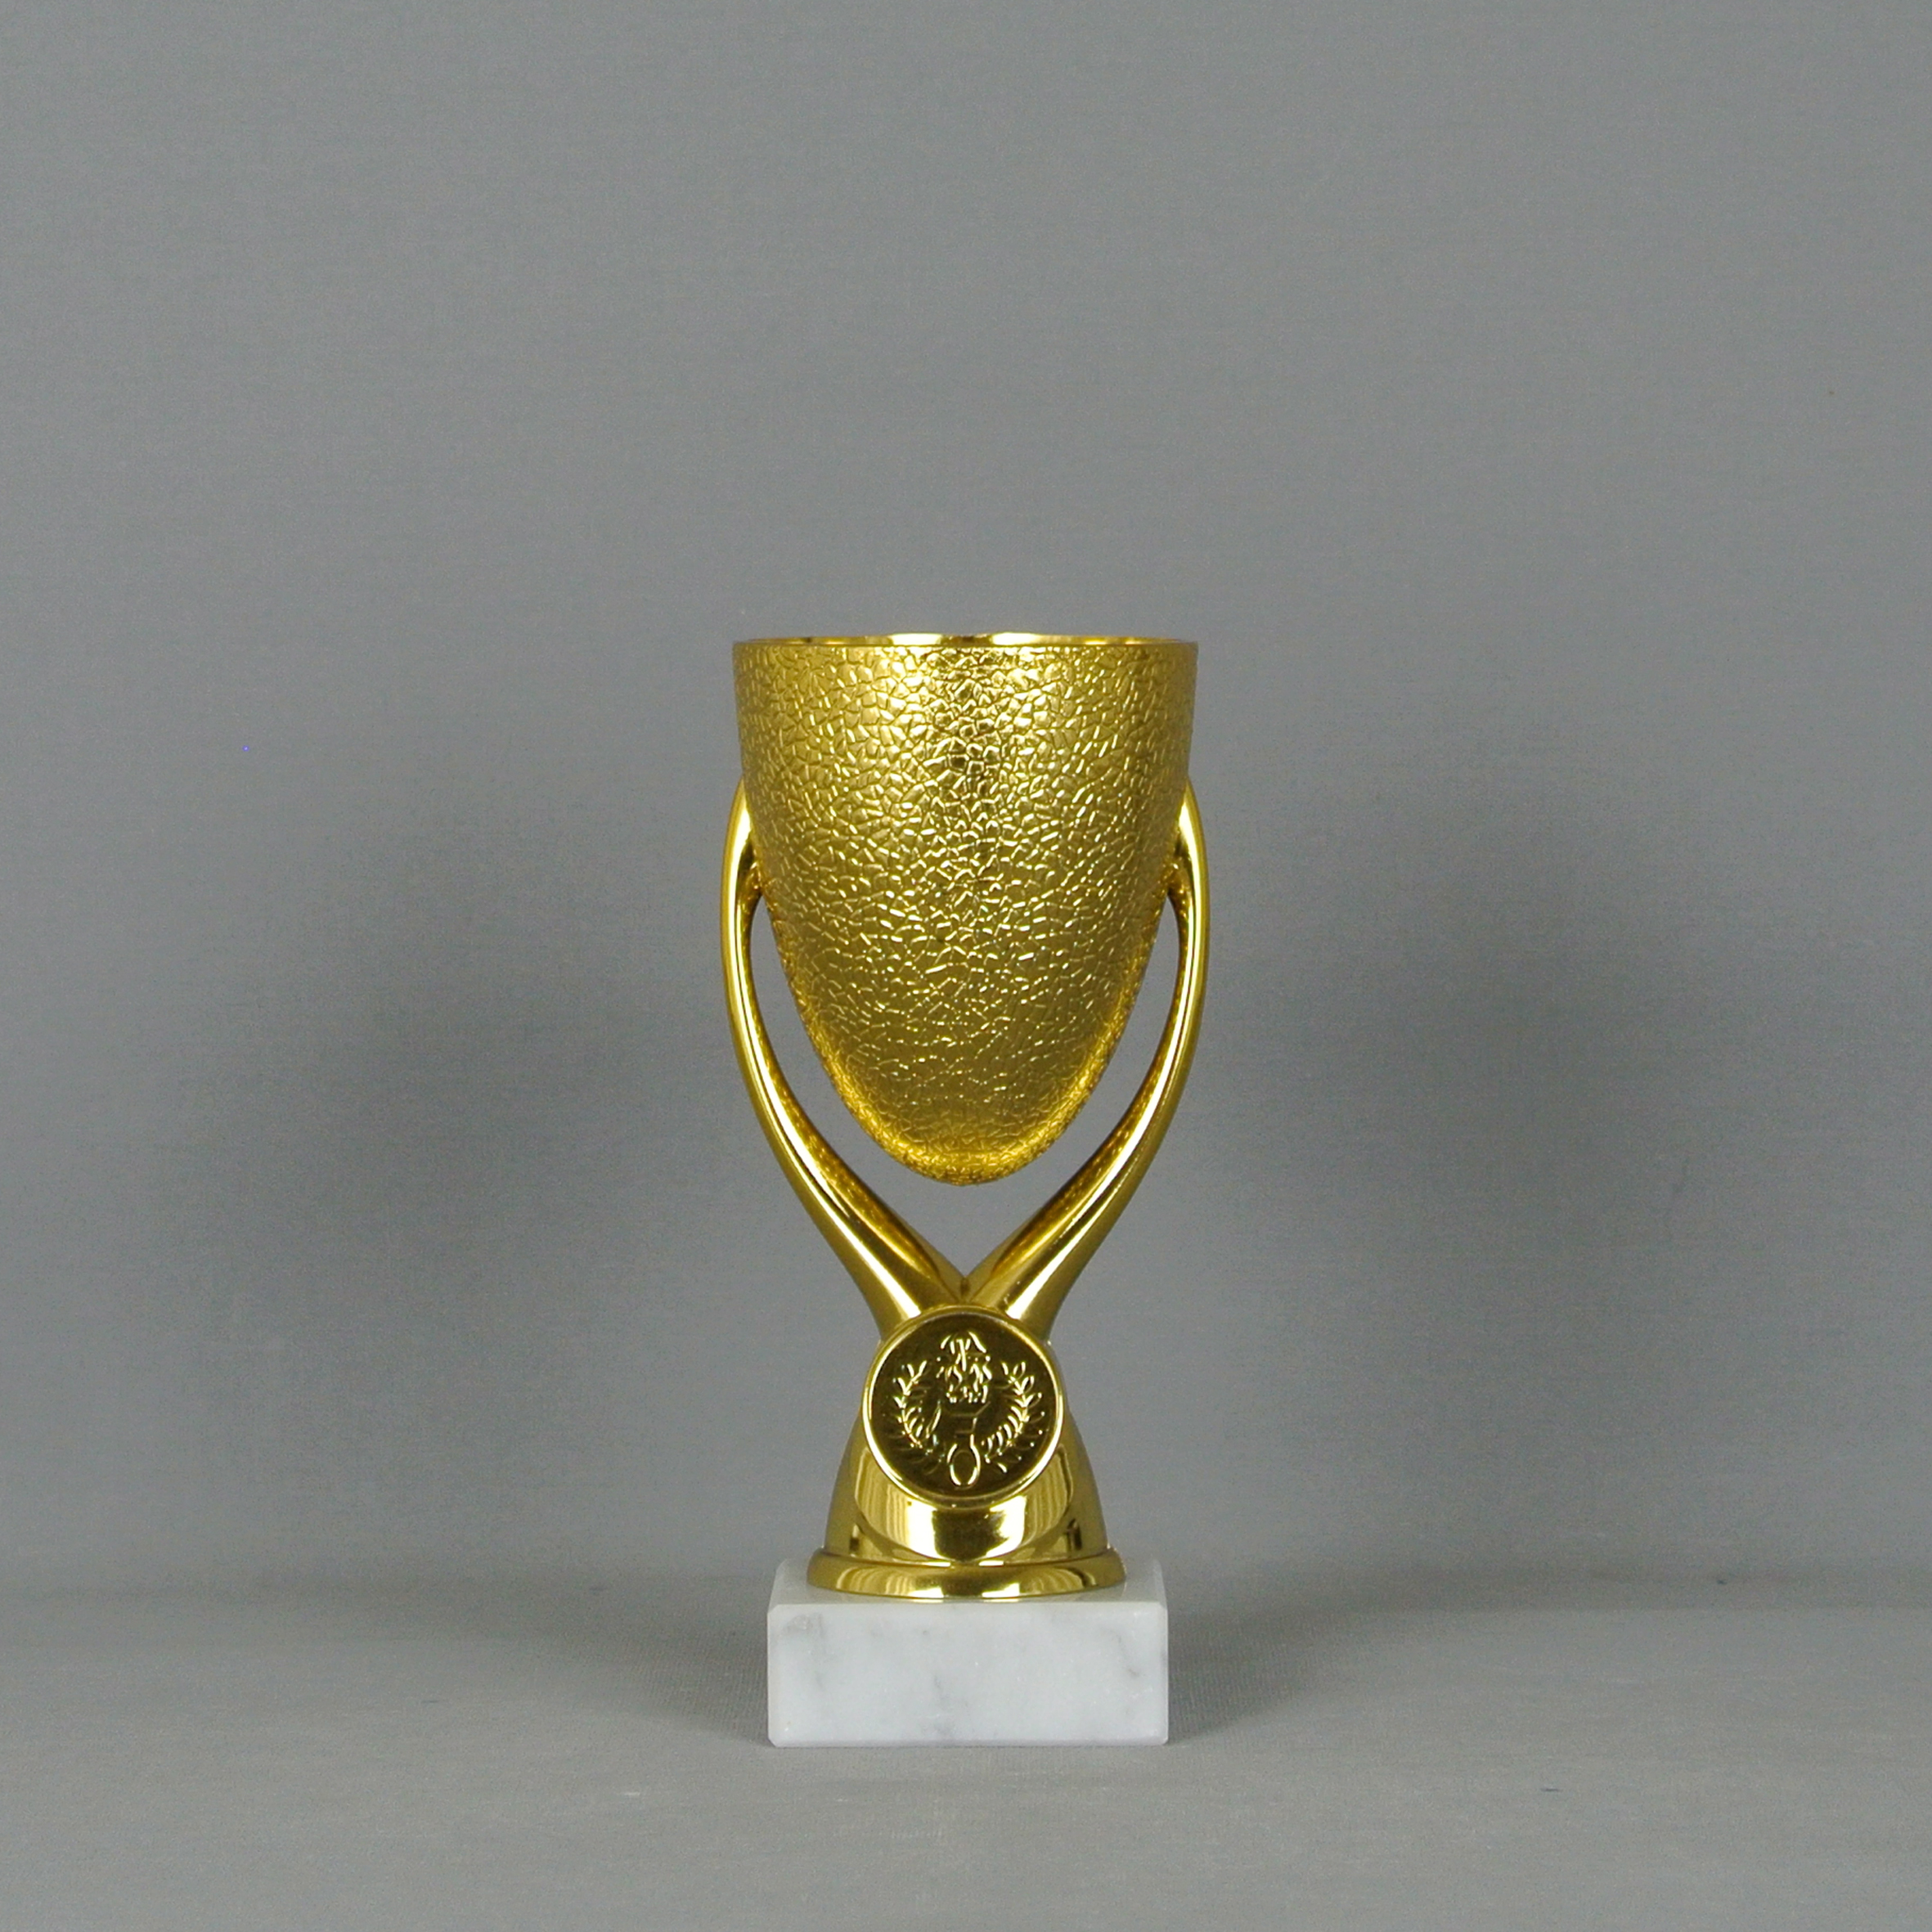 Pokal 3er Serie Nation Pokale gold silber bronze incl Gravur NEUHEIT 2018 